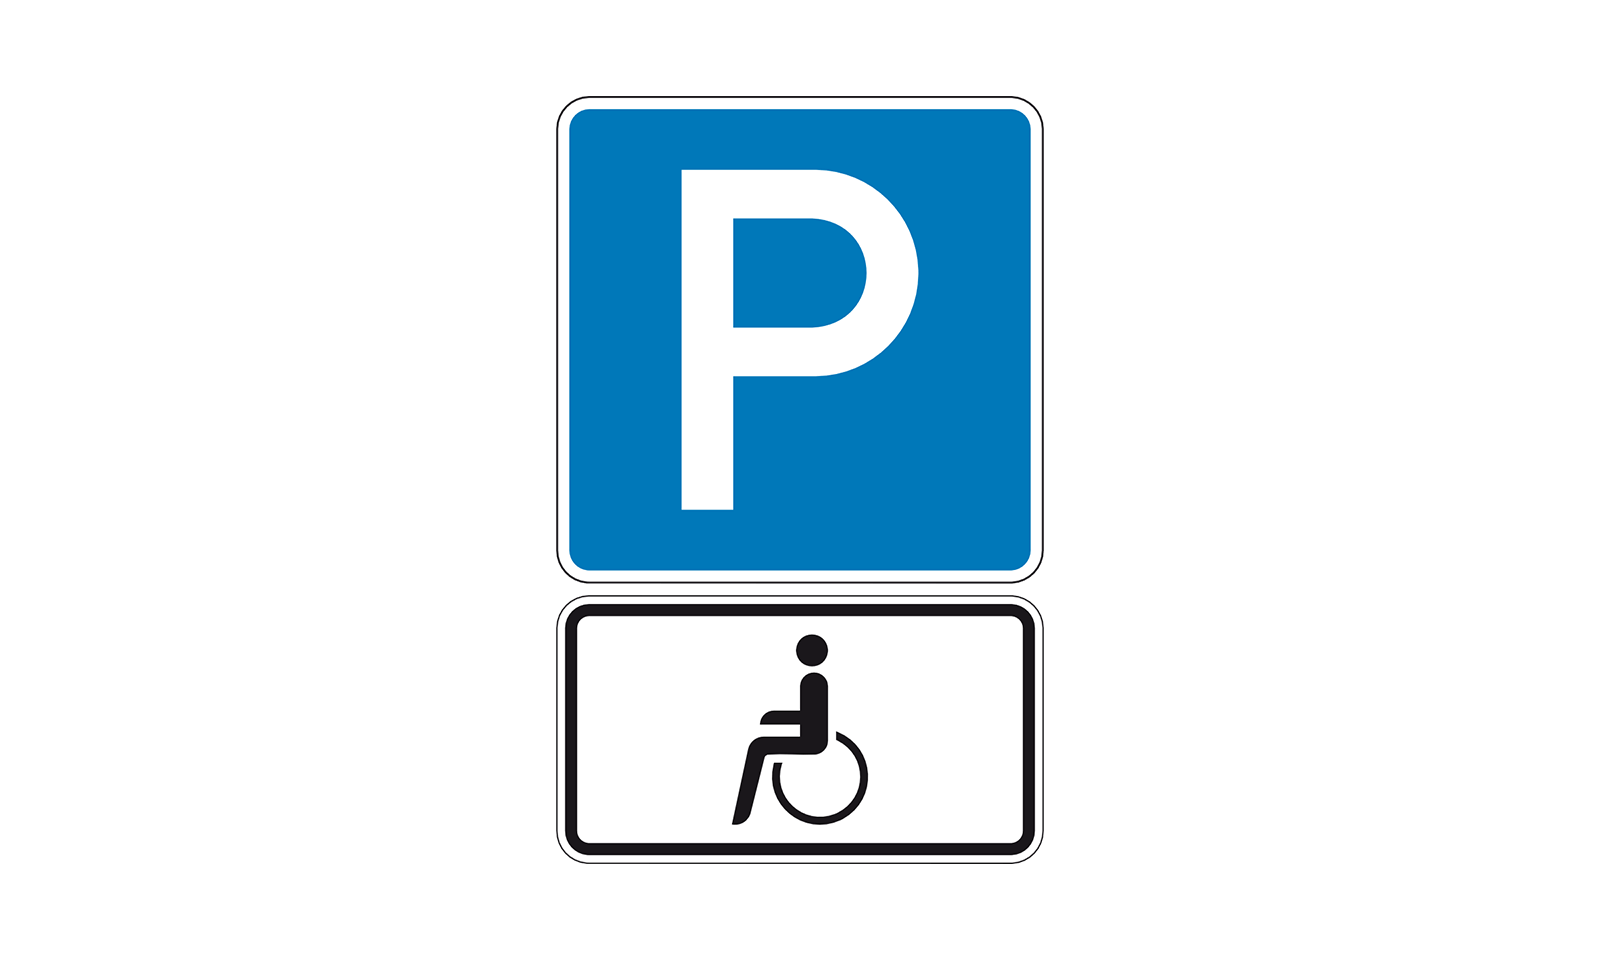 Verkehrszeichen Schwerbehinderte mit Parkausweis kaufen?